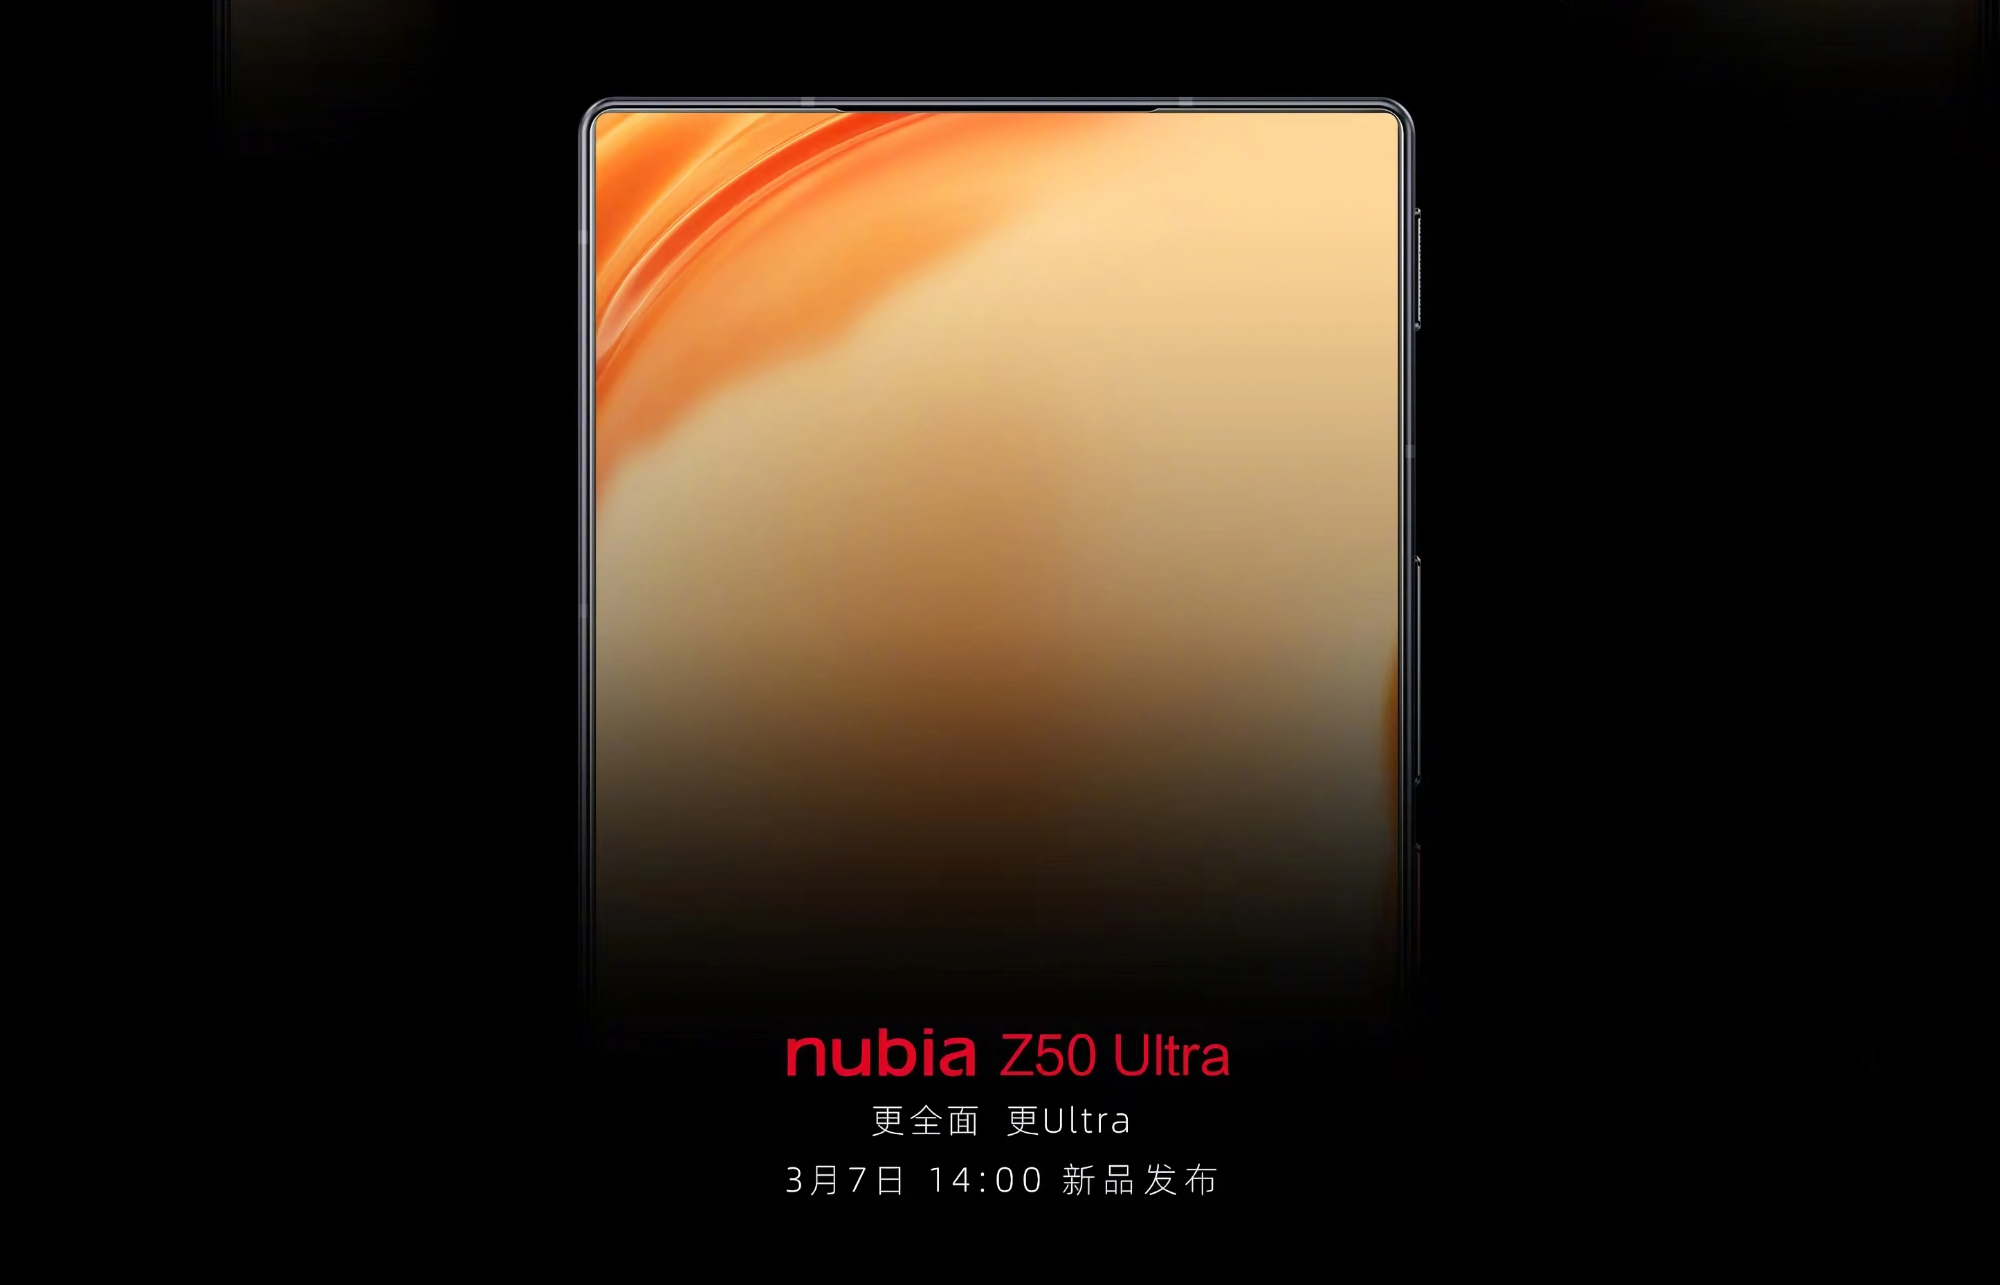 C'est officiel : Le Nubia Z50 Ultra, doté d'un écran plat, d'un cadre fin et d'un appareil photo sur l'écran, sera dévoilé le 7 mars.